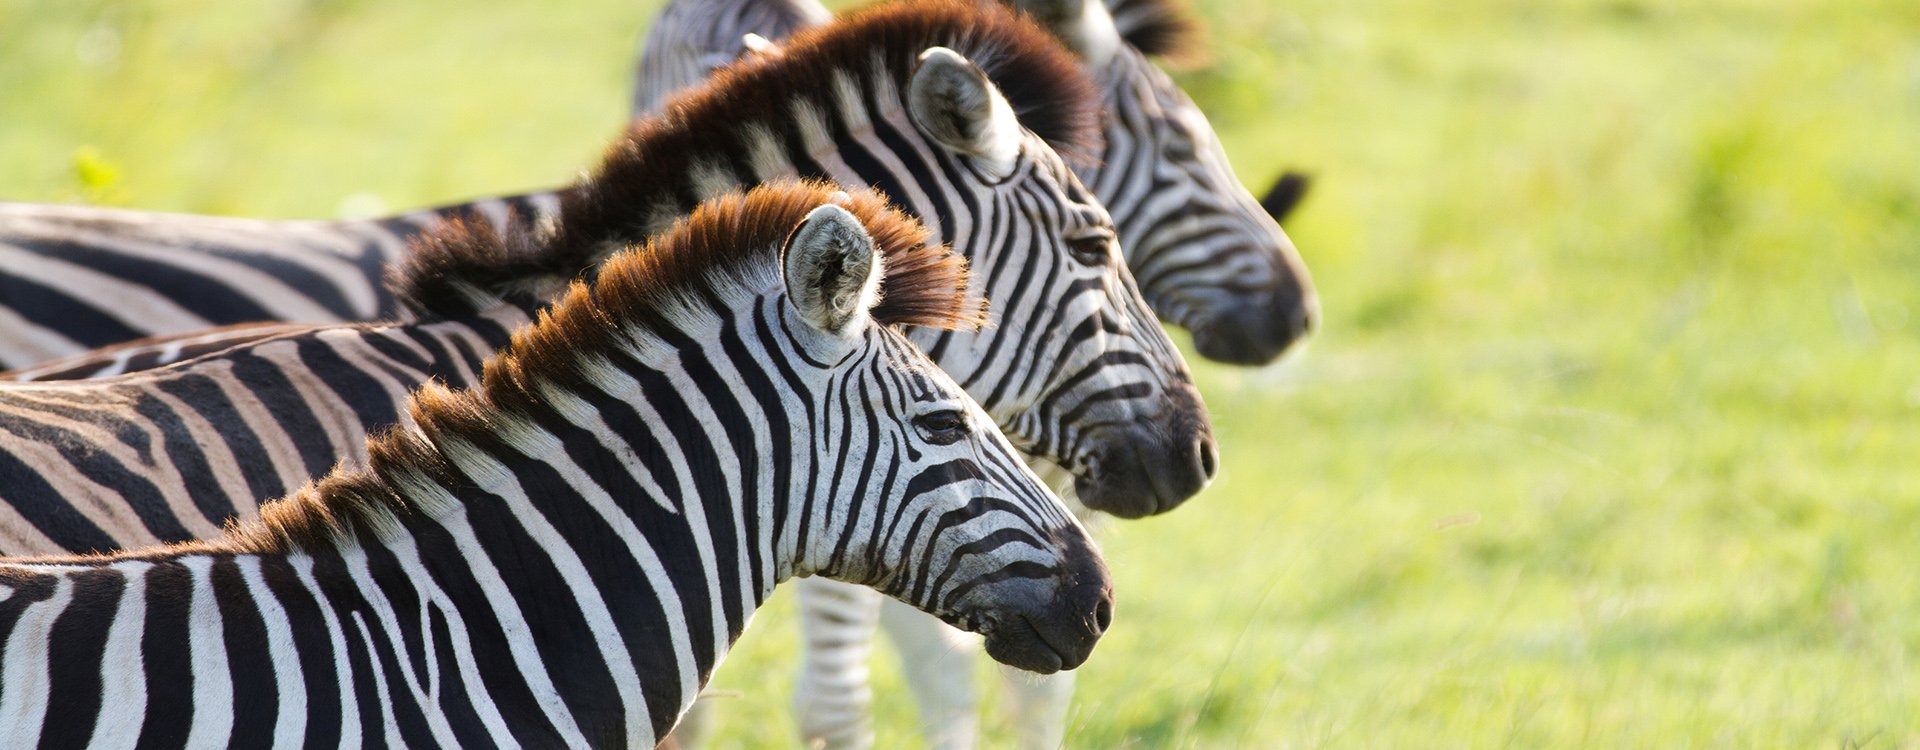 South africa_kruger_zebras